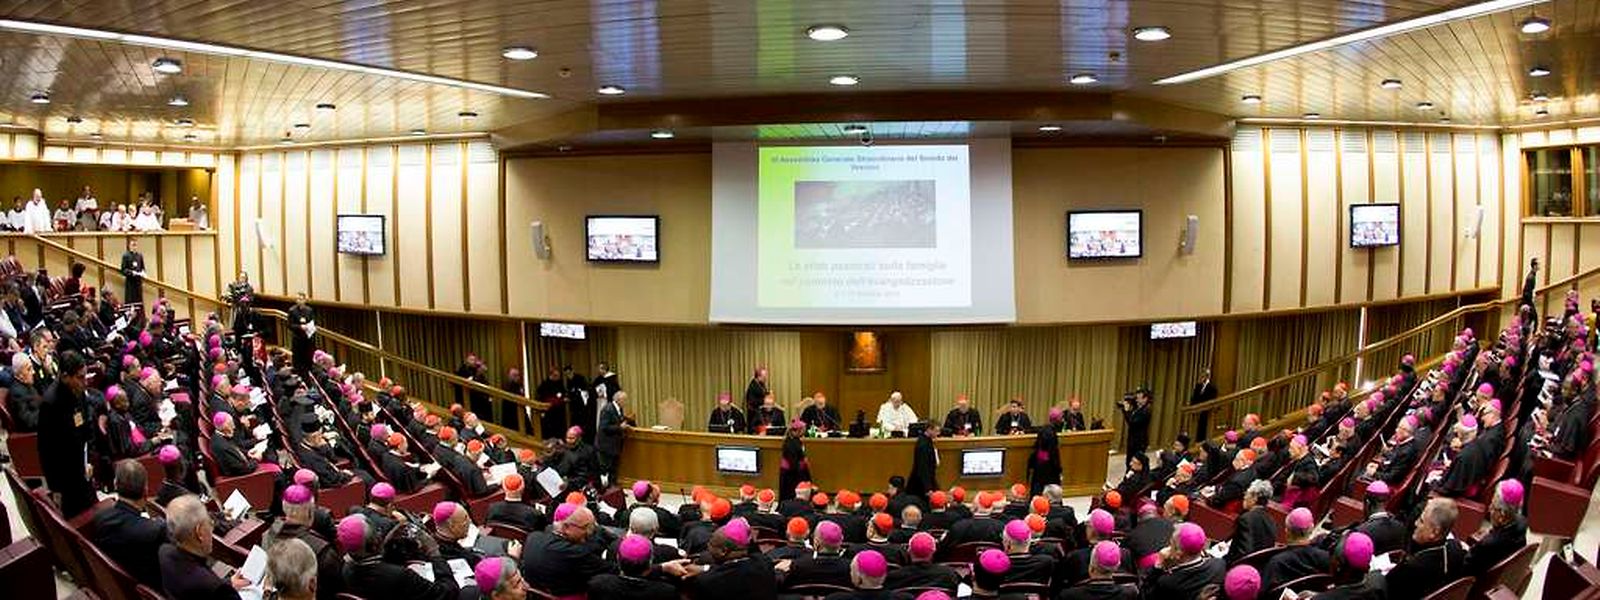 Tagungsort der Bischöfe ist die sogenannte Synodenaula. Sie befindet sich in dem Gebäude der vatikanischen Audienzhalle.